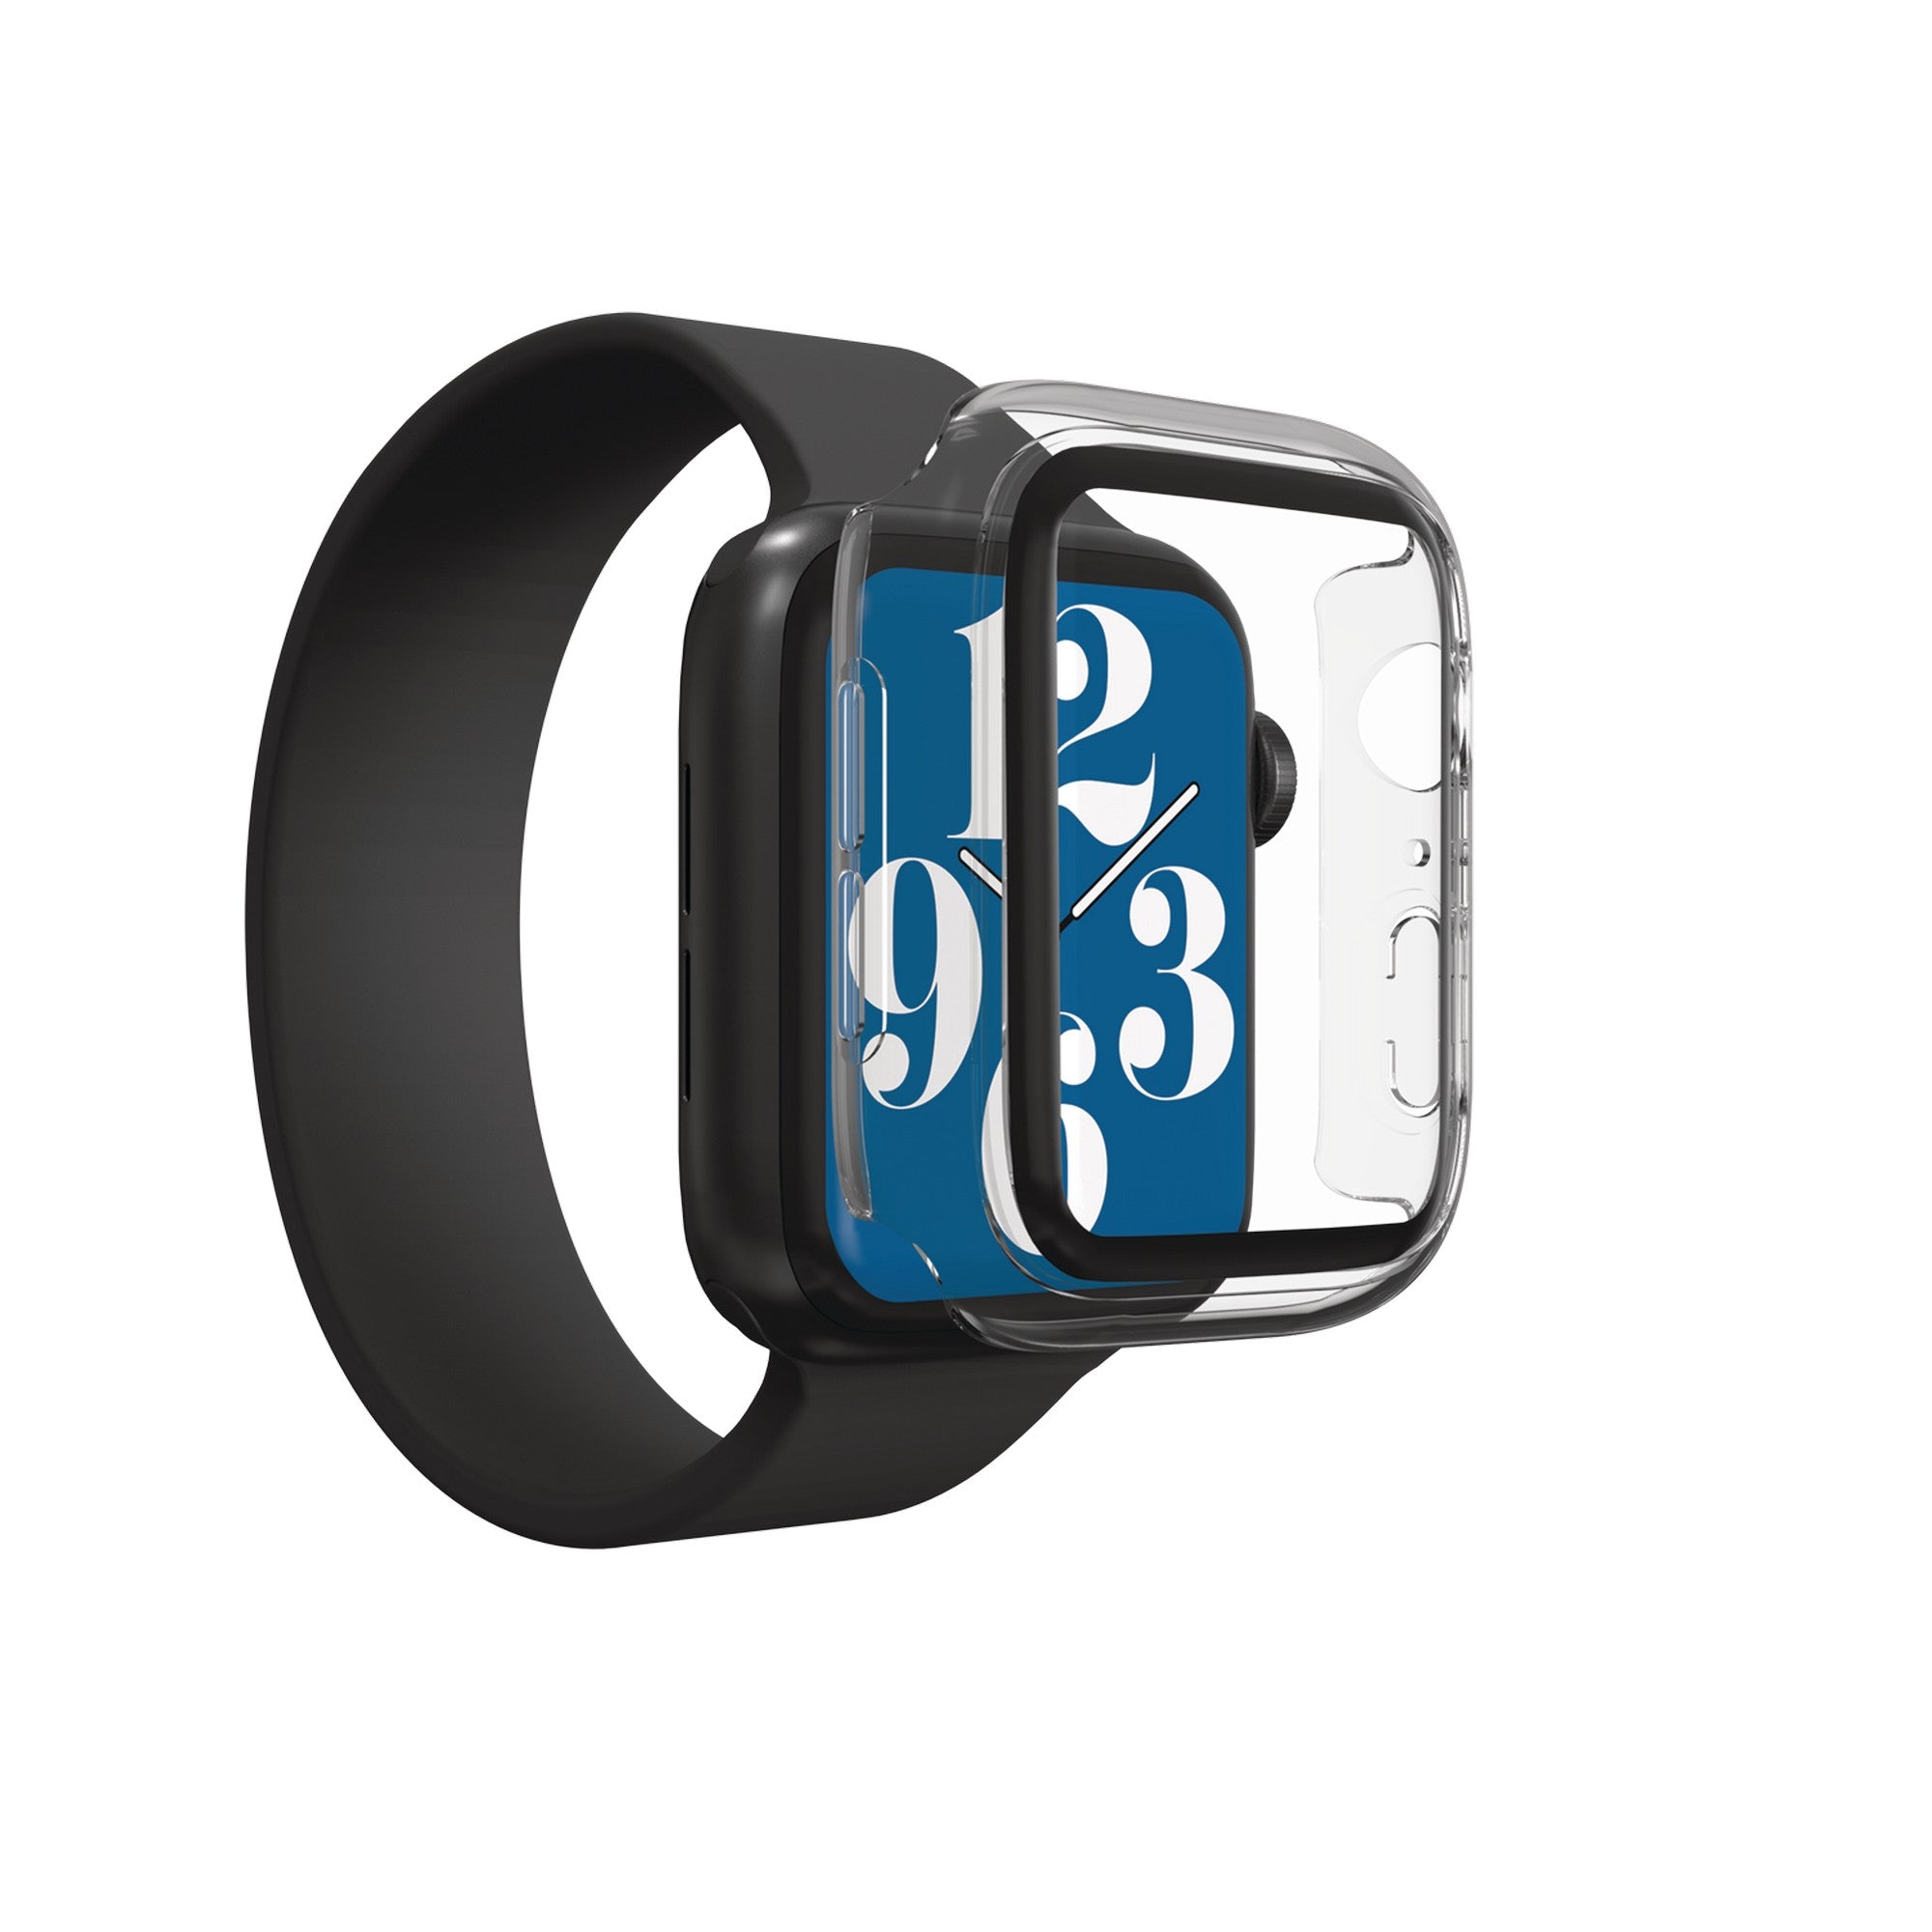 Case Slim con Protector de Pantalla 360 IFROGZ para Apple Watch S6/SE/5/4 (44 mm) - Transparente